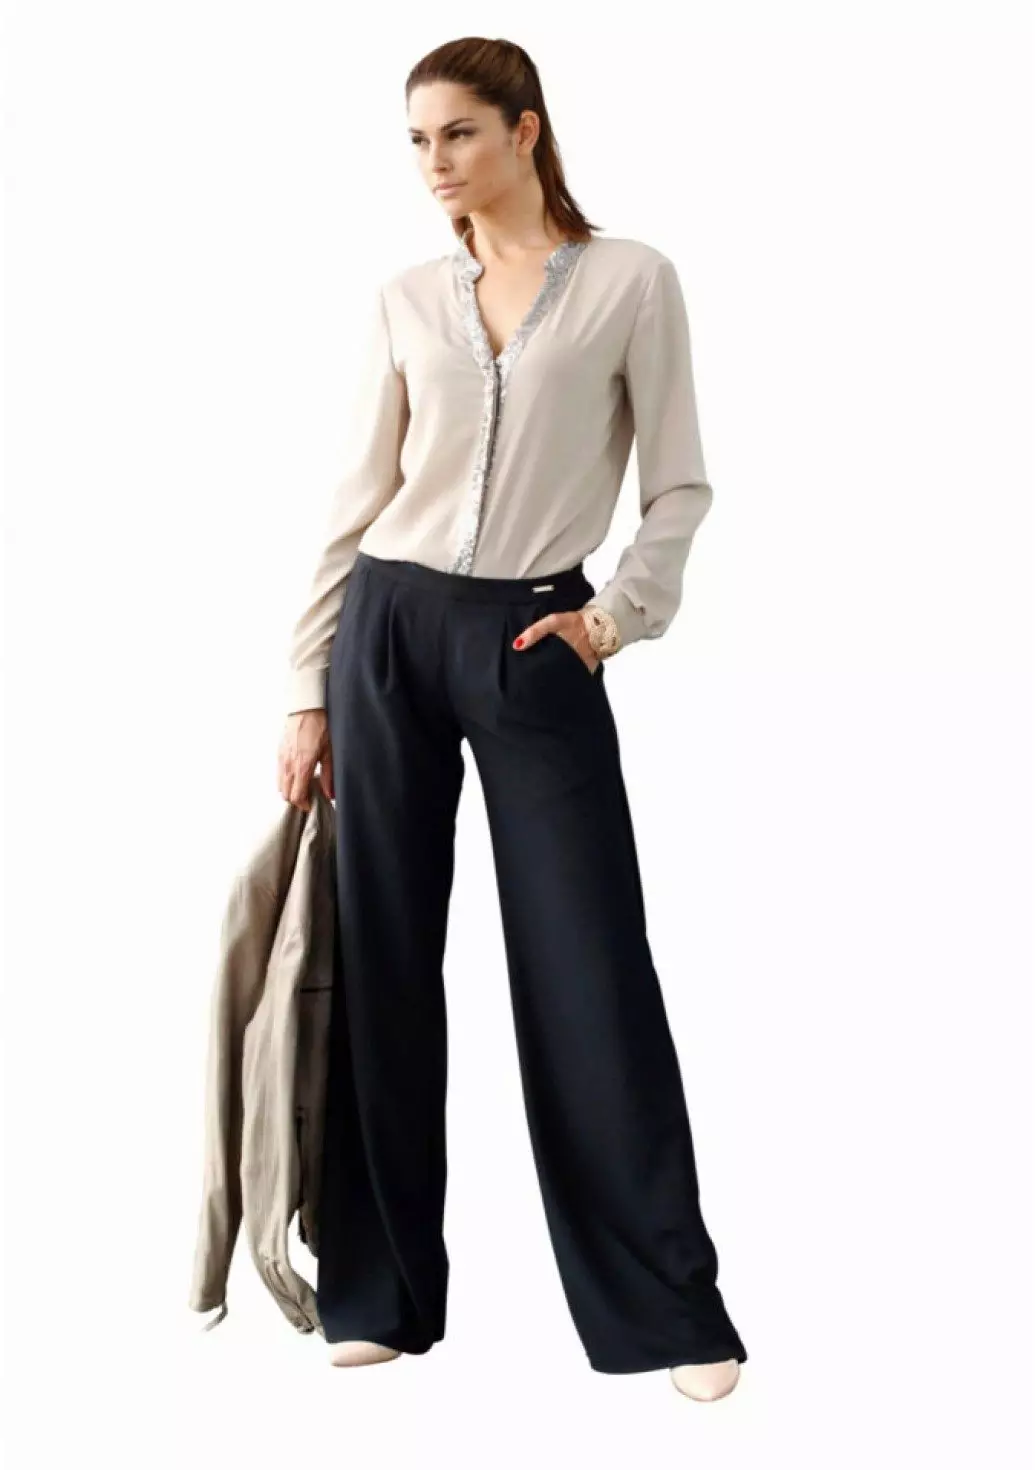 Pantalon Fashion 2021: Modèl élégance Fi a, Fashion Tandans 917_34